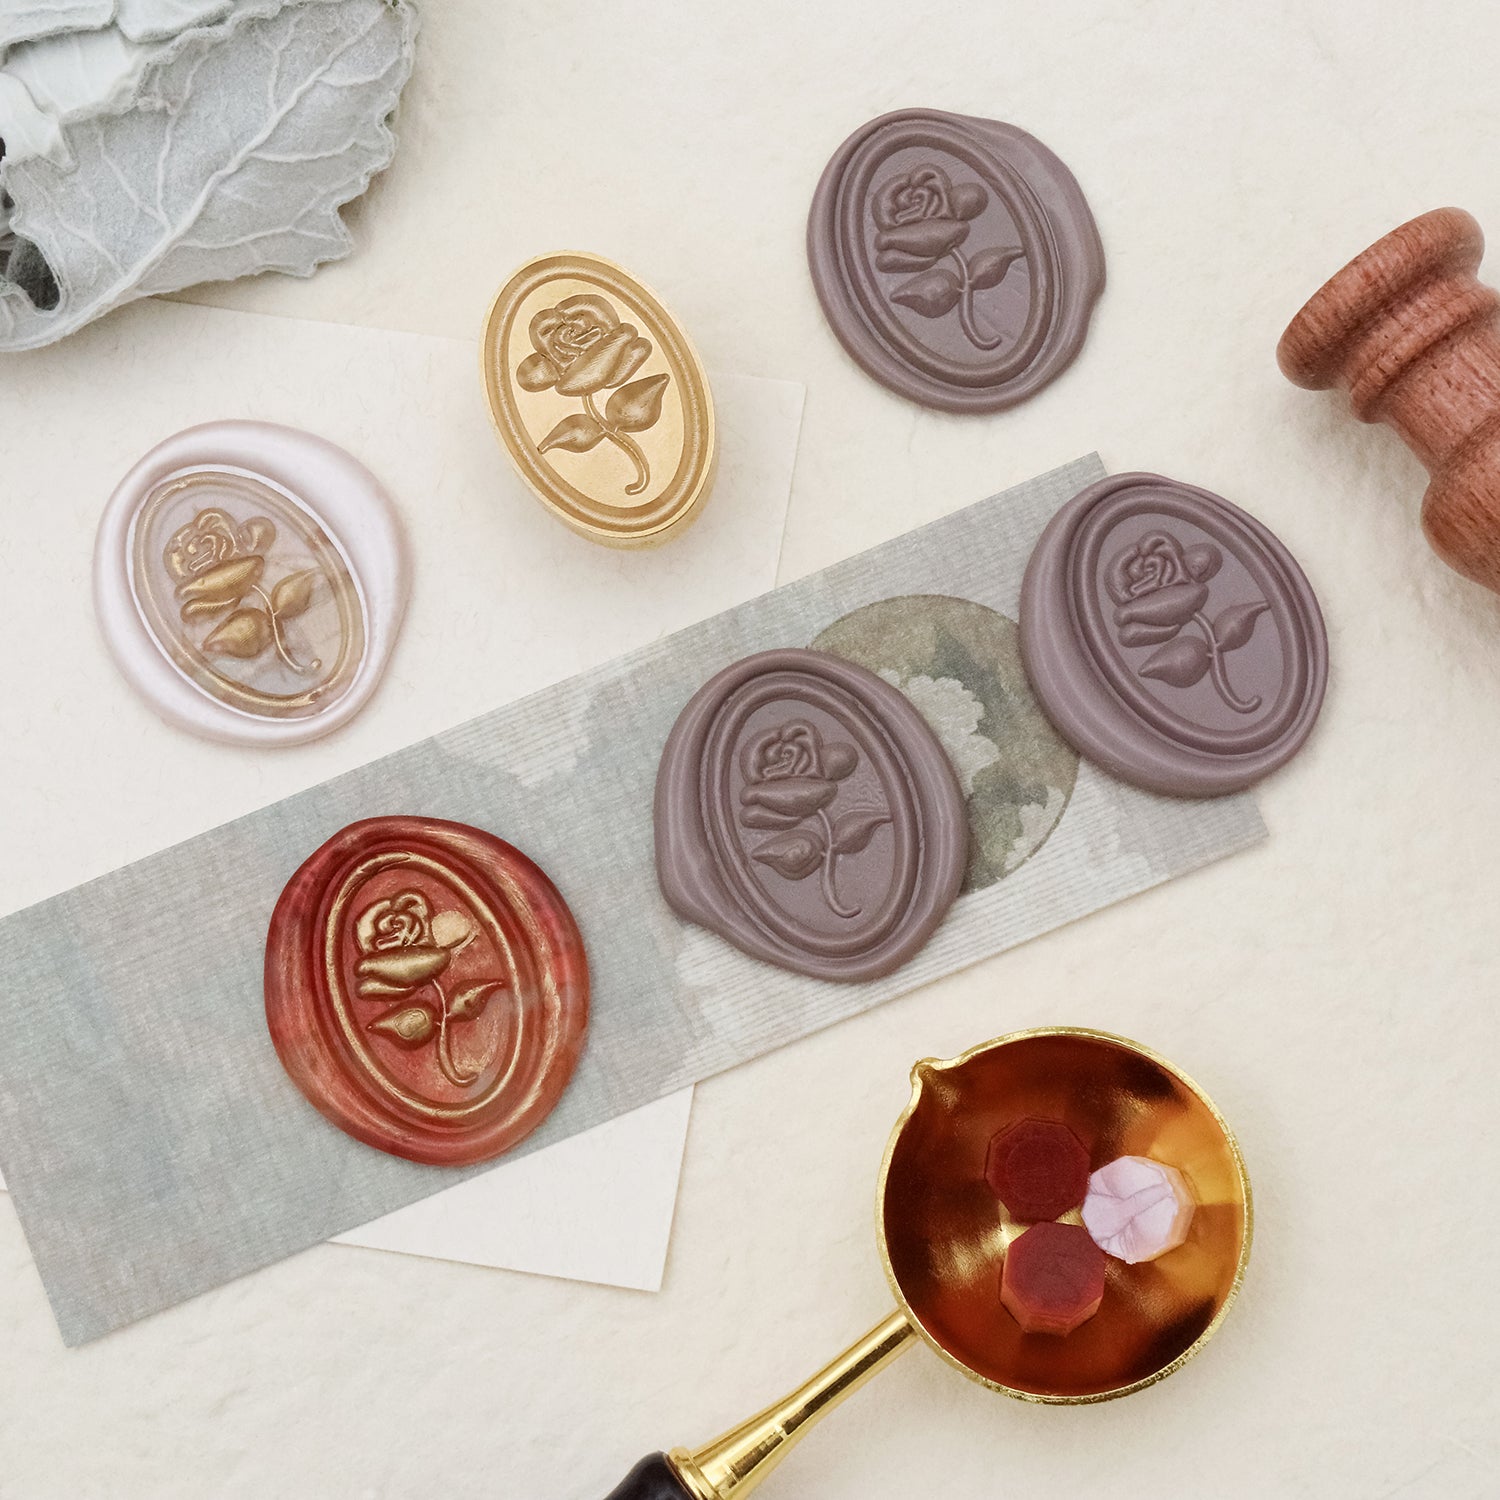  Cyrank Wax Seal Stamp, Envelope Sealer Stamp Rose Wax